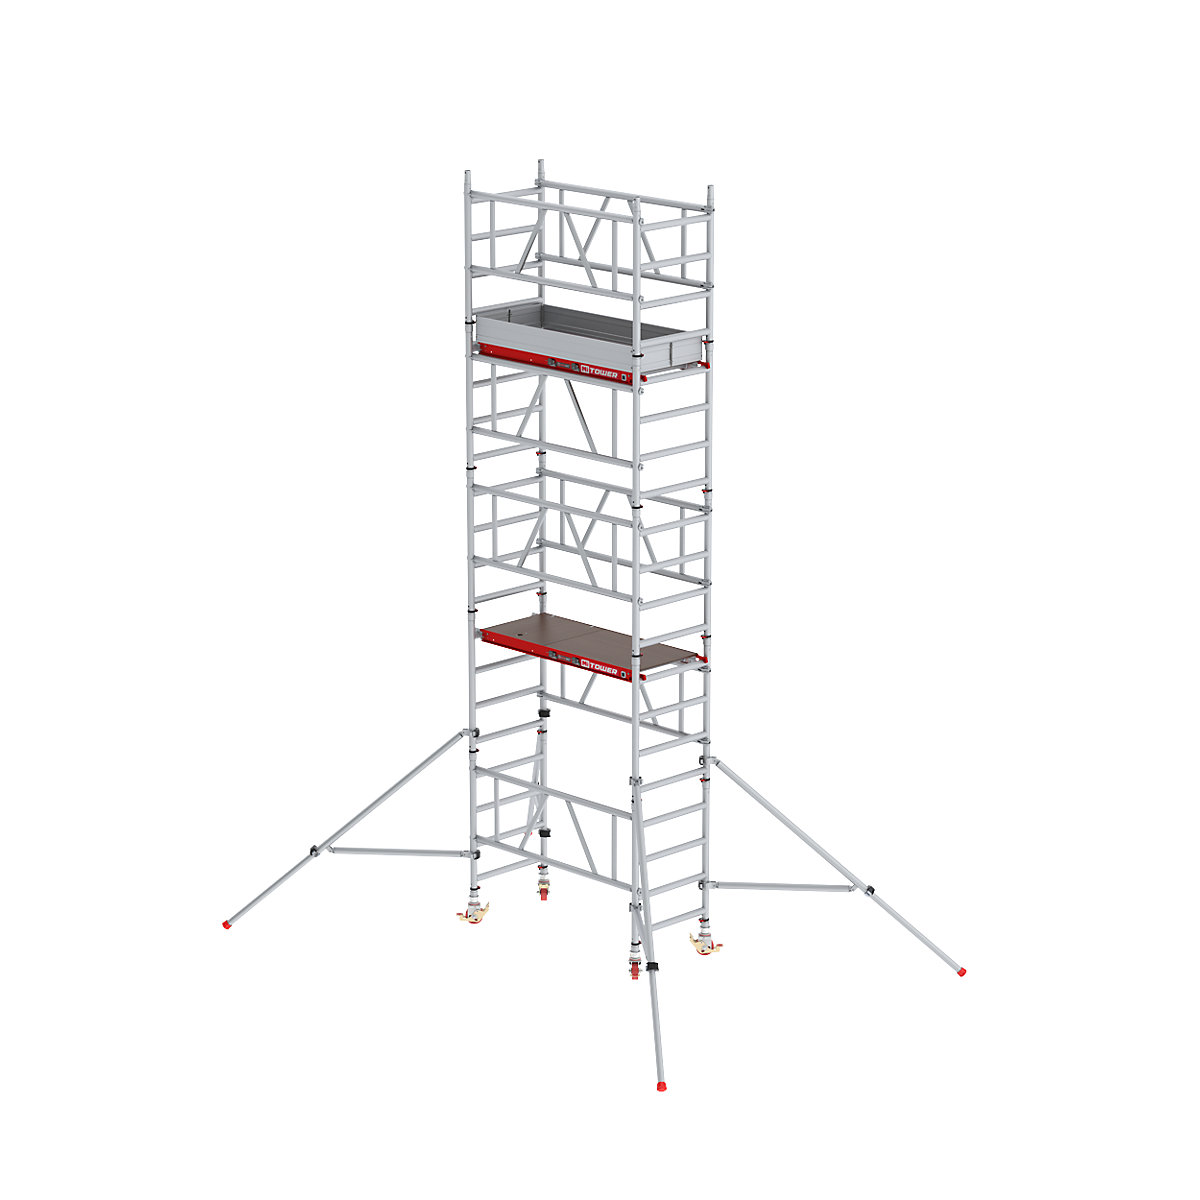 Hitro sestavljiv pomični oder MiTOWER Plus – Altrex, lesena ploščad, delovna višina 6 m